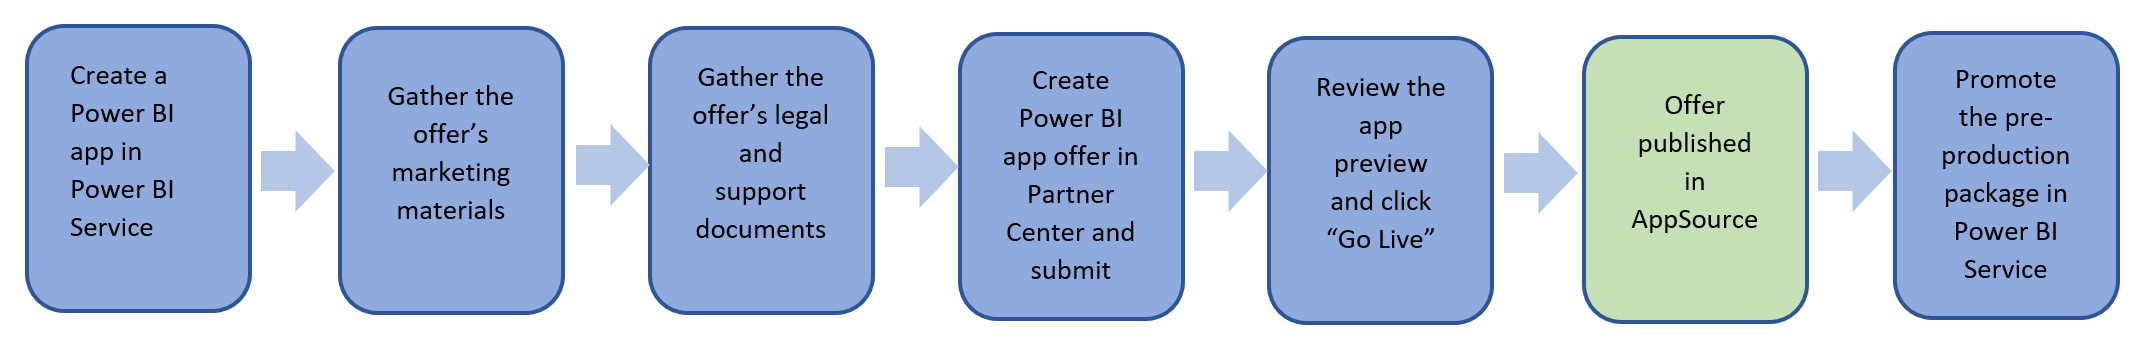 Panoramica dei passaggi per pubblicare un'offerta di app Power BI.